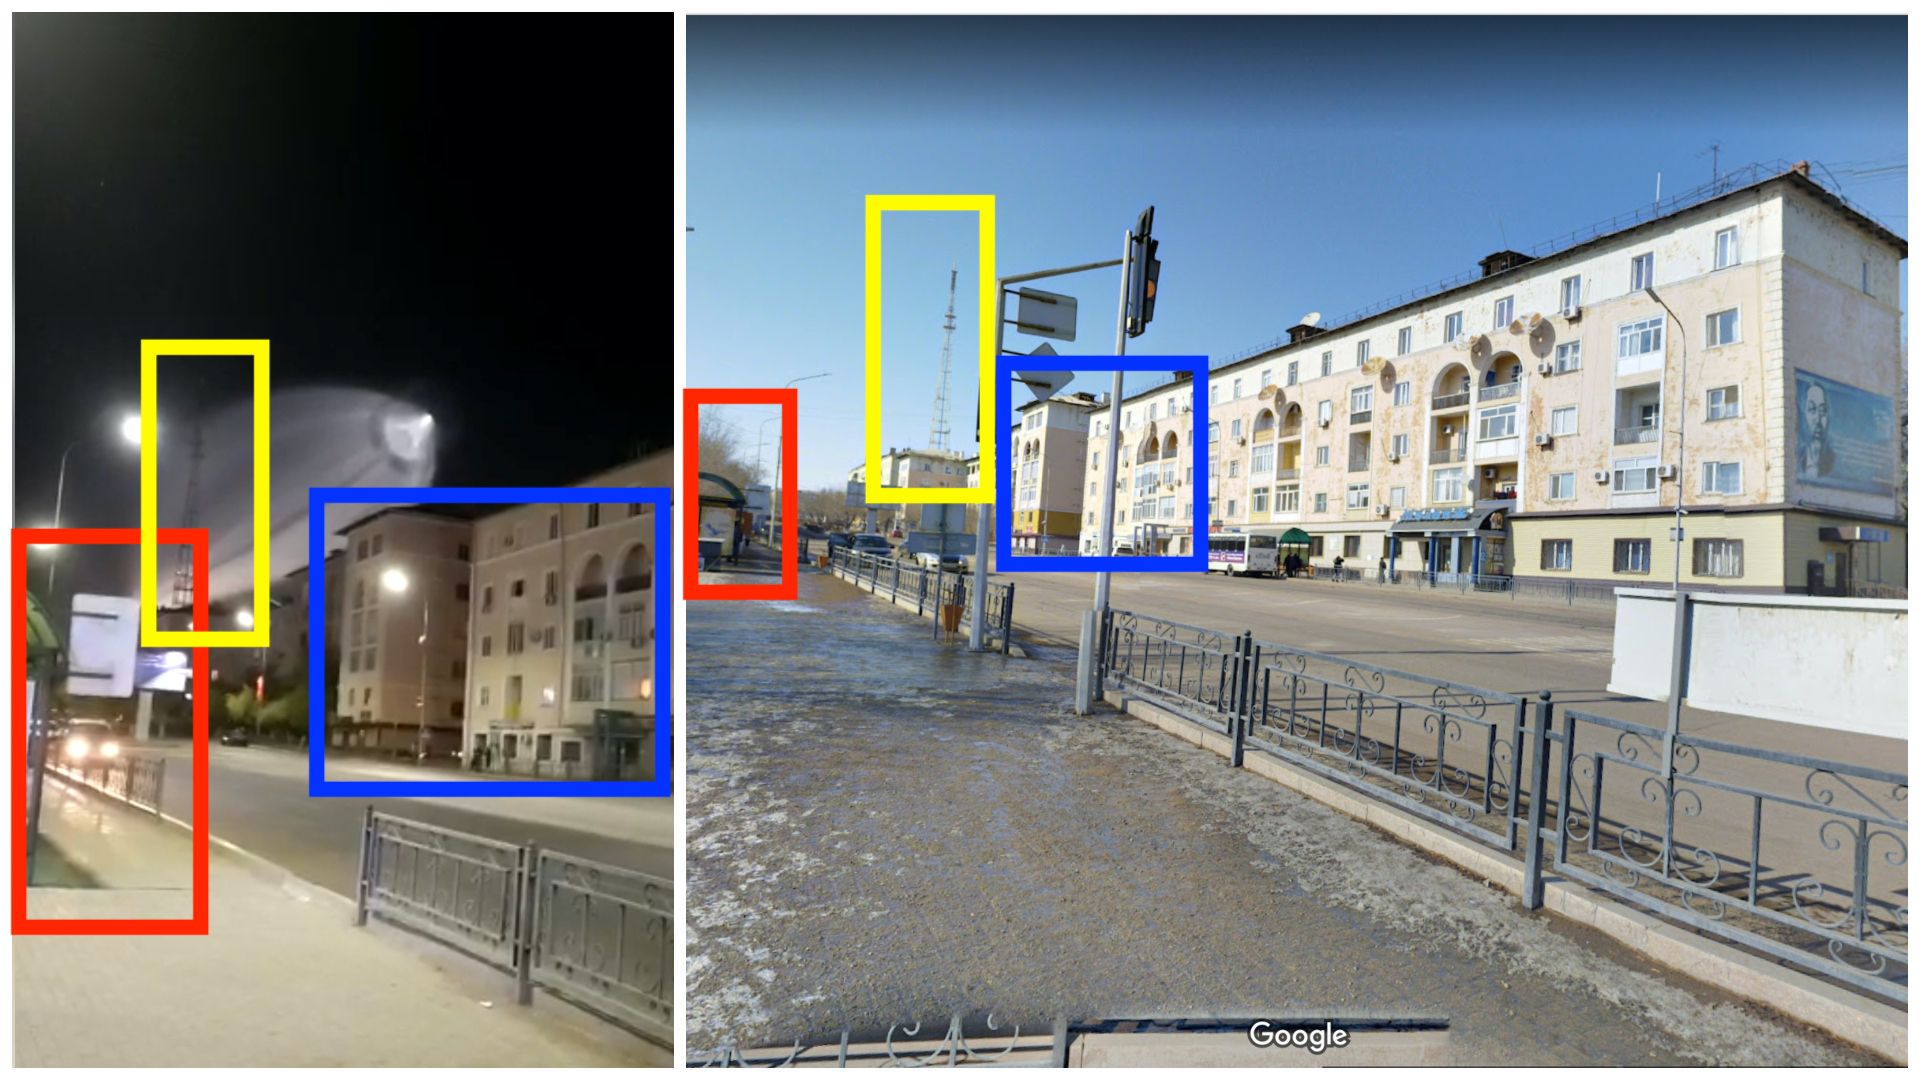 A gauche, une capture d'écran de la vidéo. A droite, une capture d'écran d'une photo postée sur Google Maps et datée de février 2021. Plusieurs éléments correspondent, comme le montrent les encadrés en rouge, bleu et jaune.